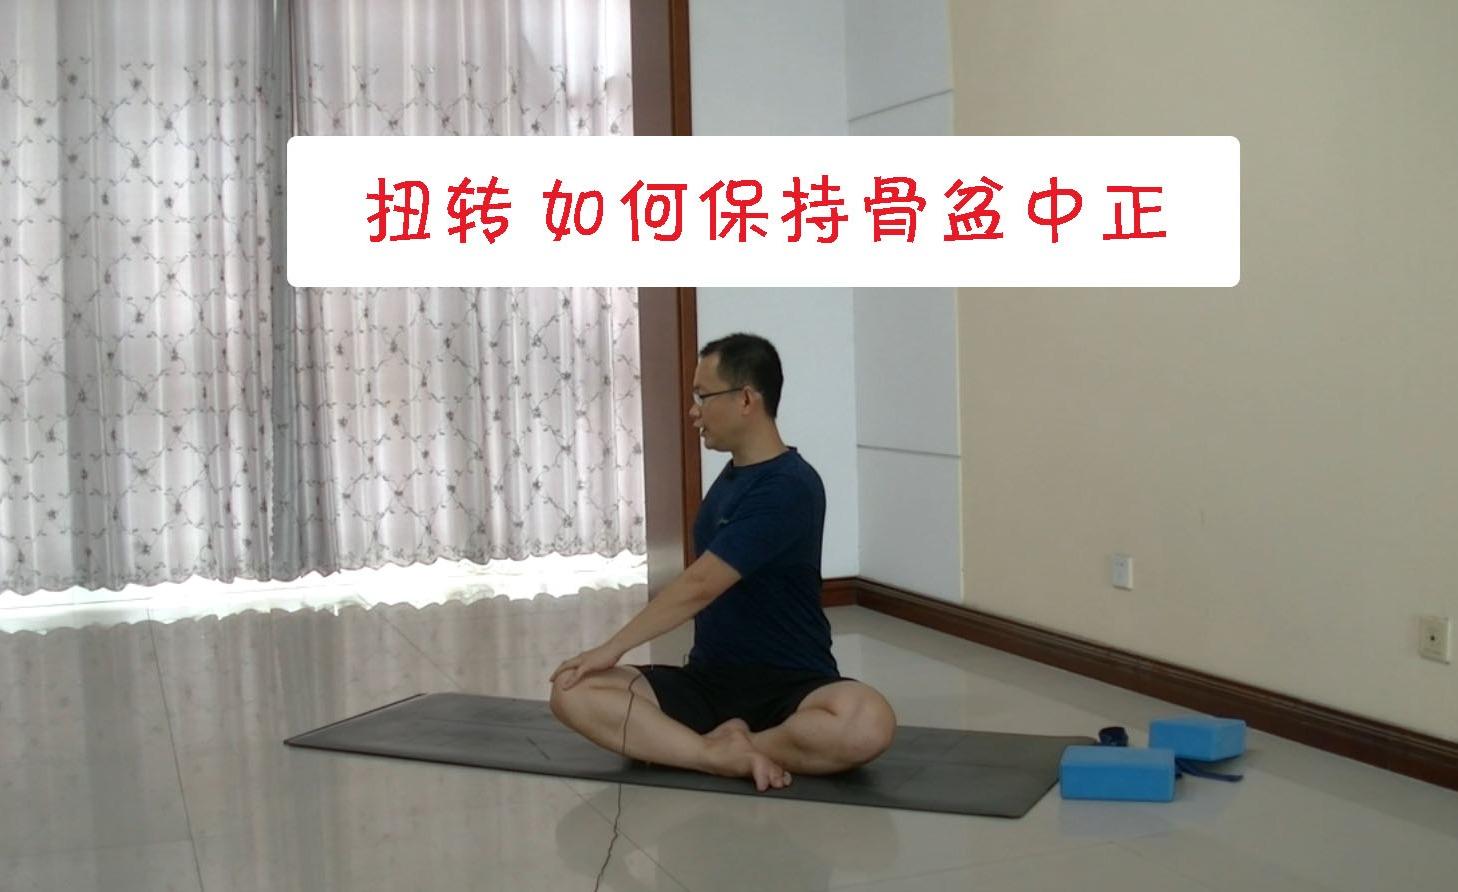 在瑜伽扭转练习中 如何保持骨盆的中正 做到这几点预防脊柱侧弯